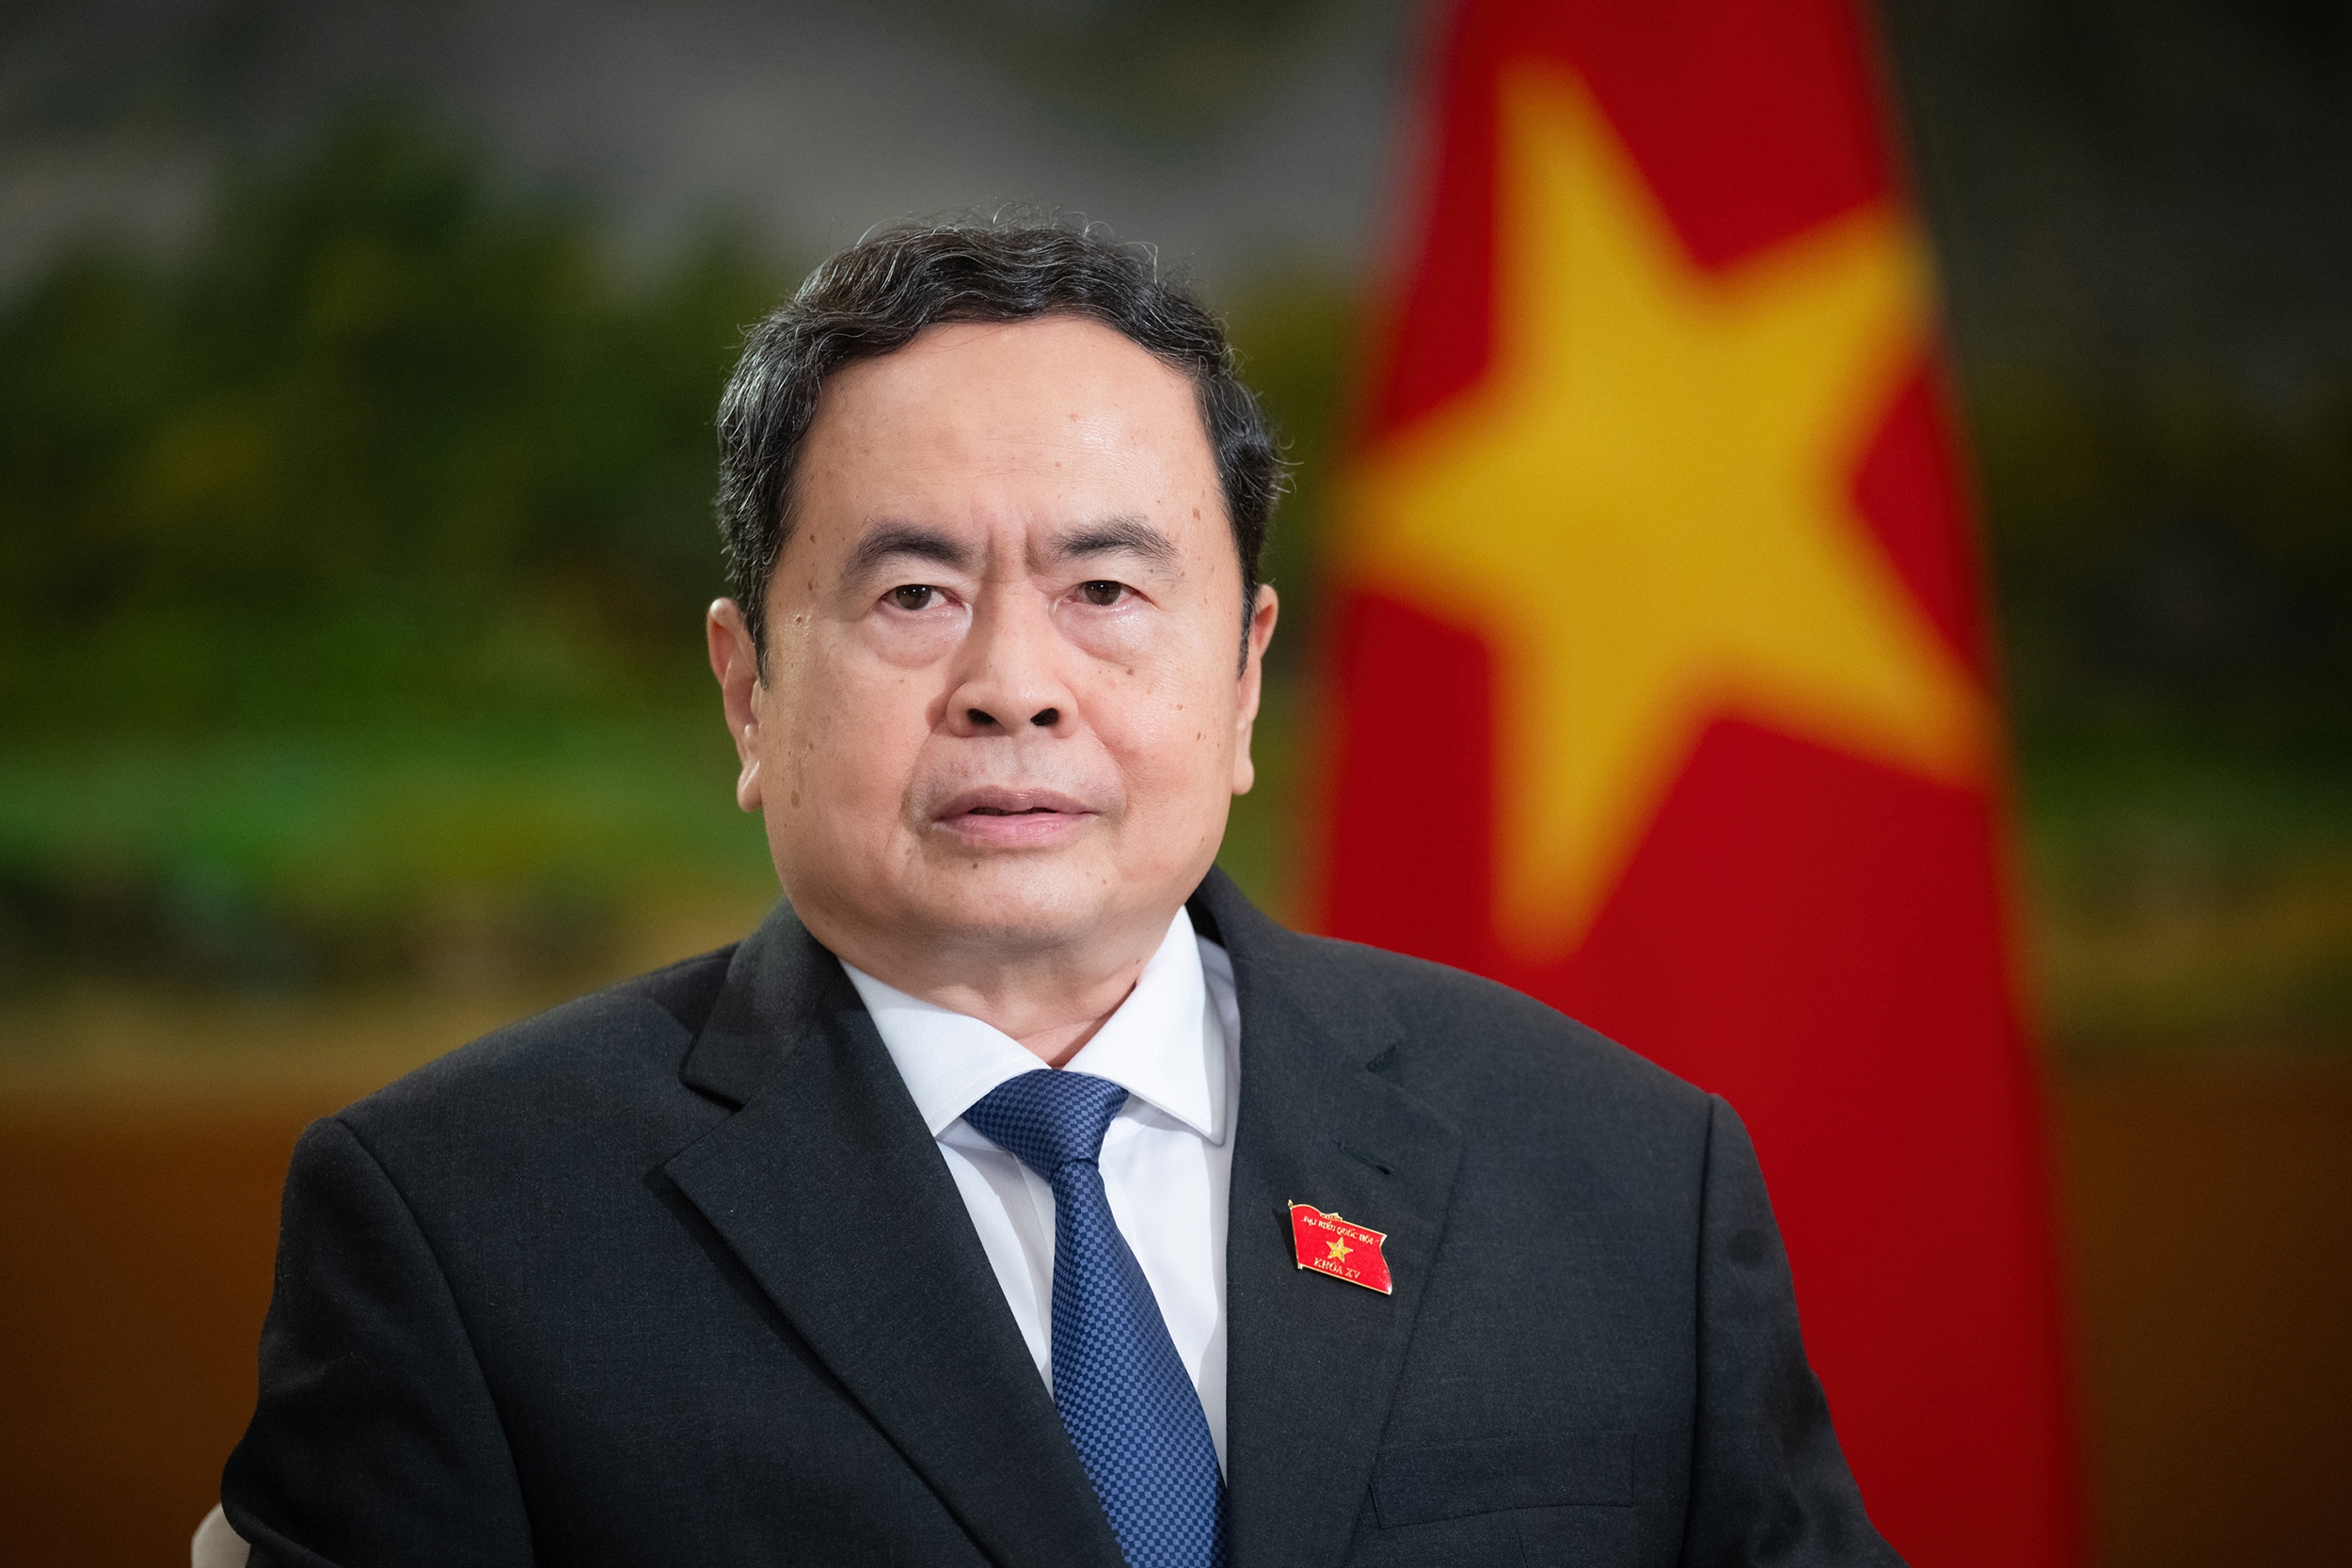 Quốc hội nâng cao hiệu quả hoạt động theo ý nguyện của Tổng Bí thư Nguyễn Phú Trọng